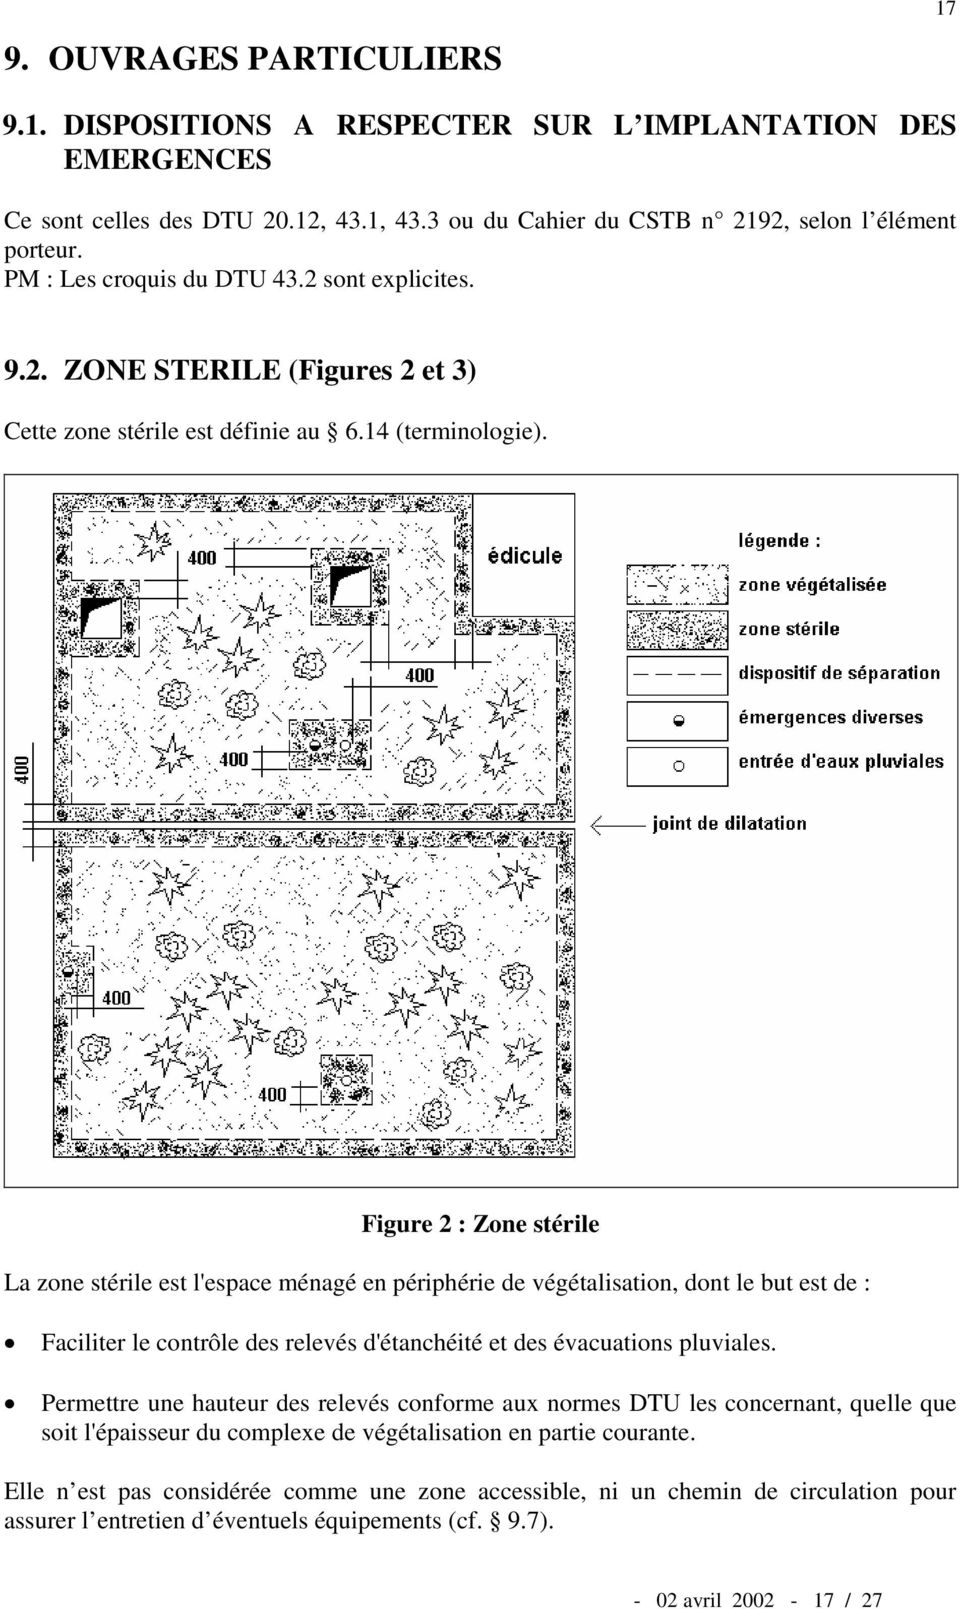 Figure 2 : Zone stérile La zone stérile est l'espace ménagé en périphérie de végétalisation, dont le but est de : Faciliter le contrôle des relevés d'étanchéité et des évacuations pluviales.